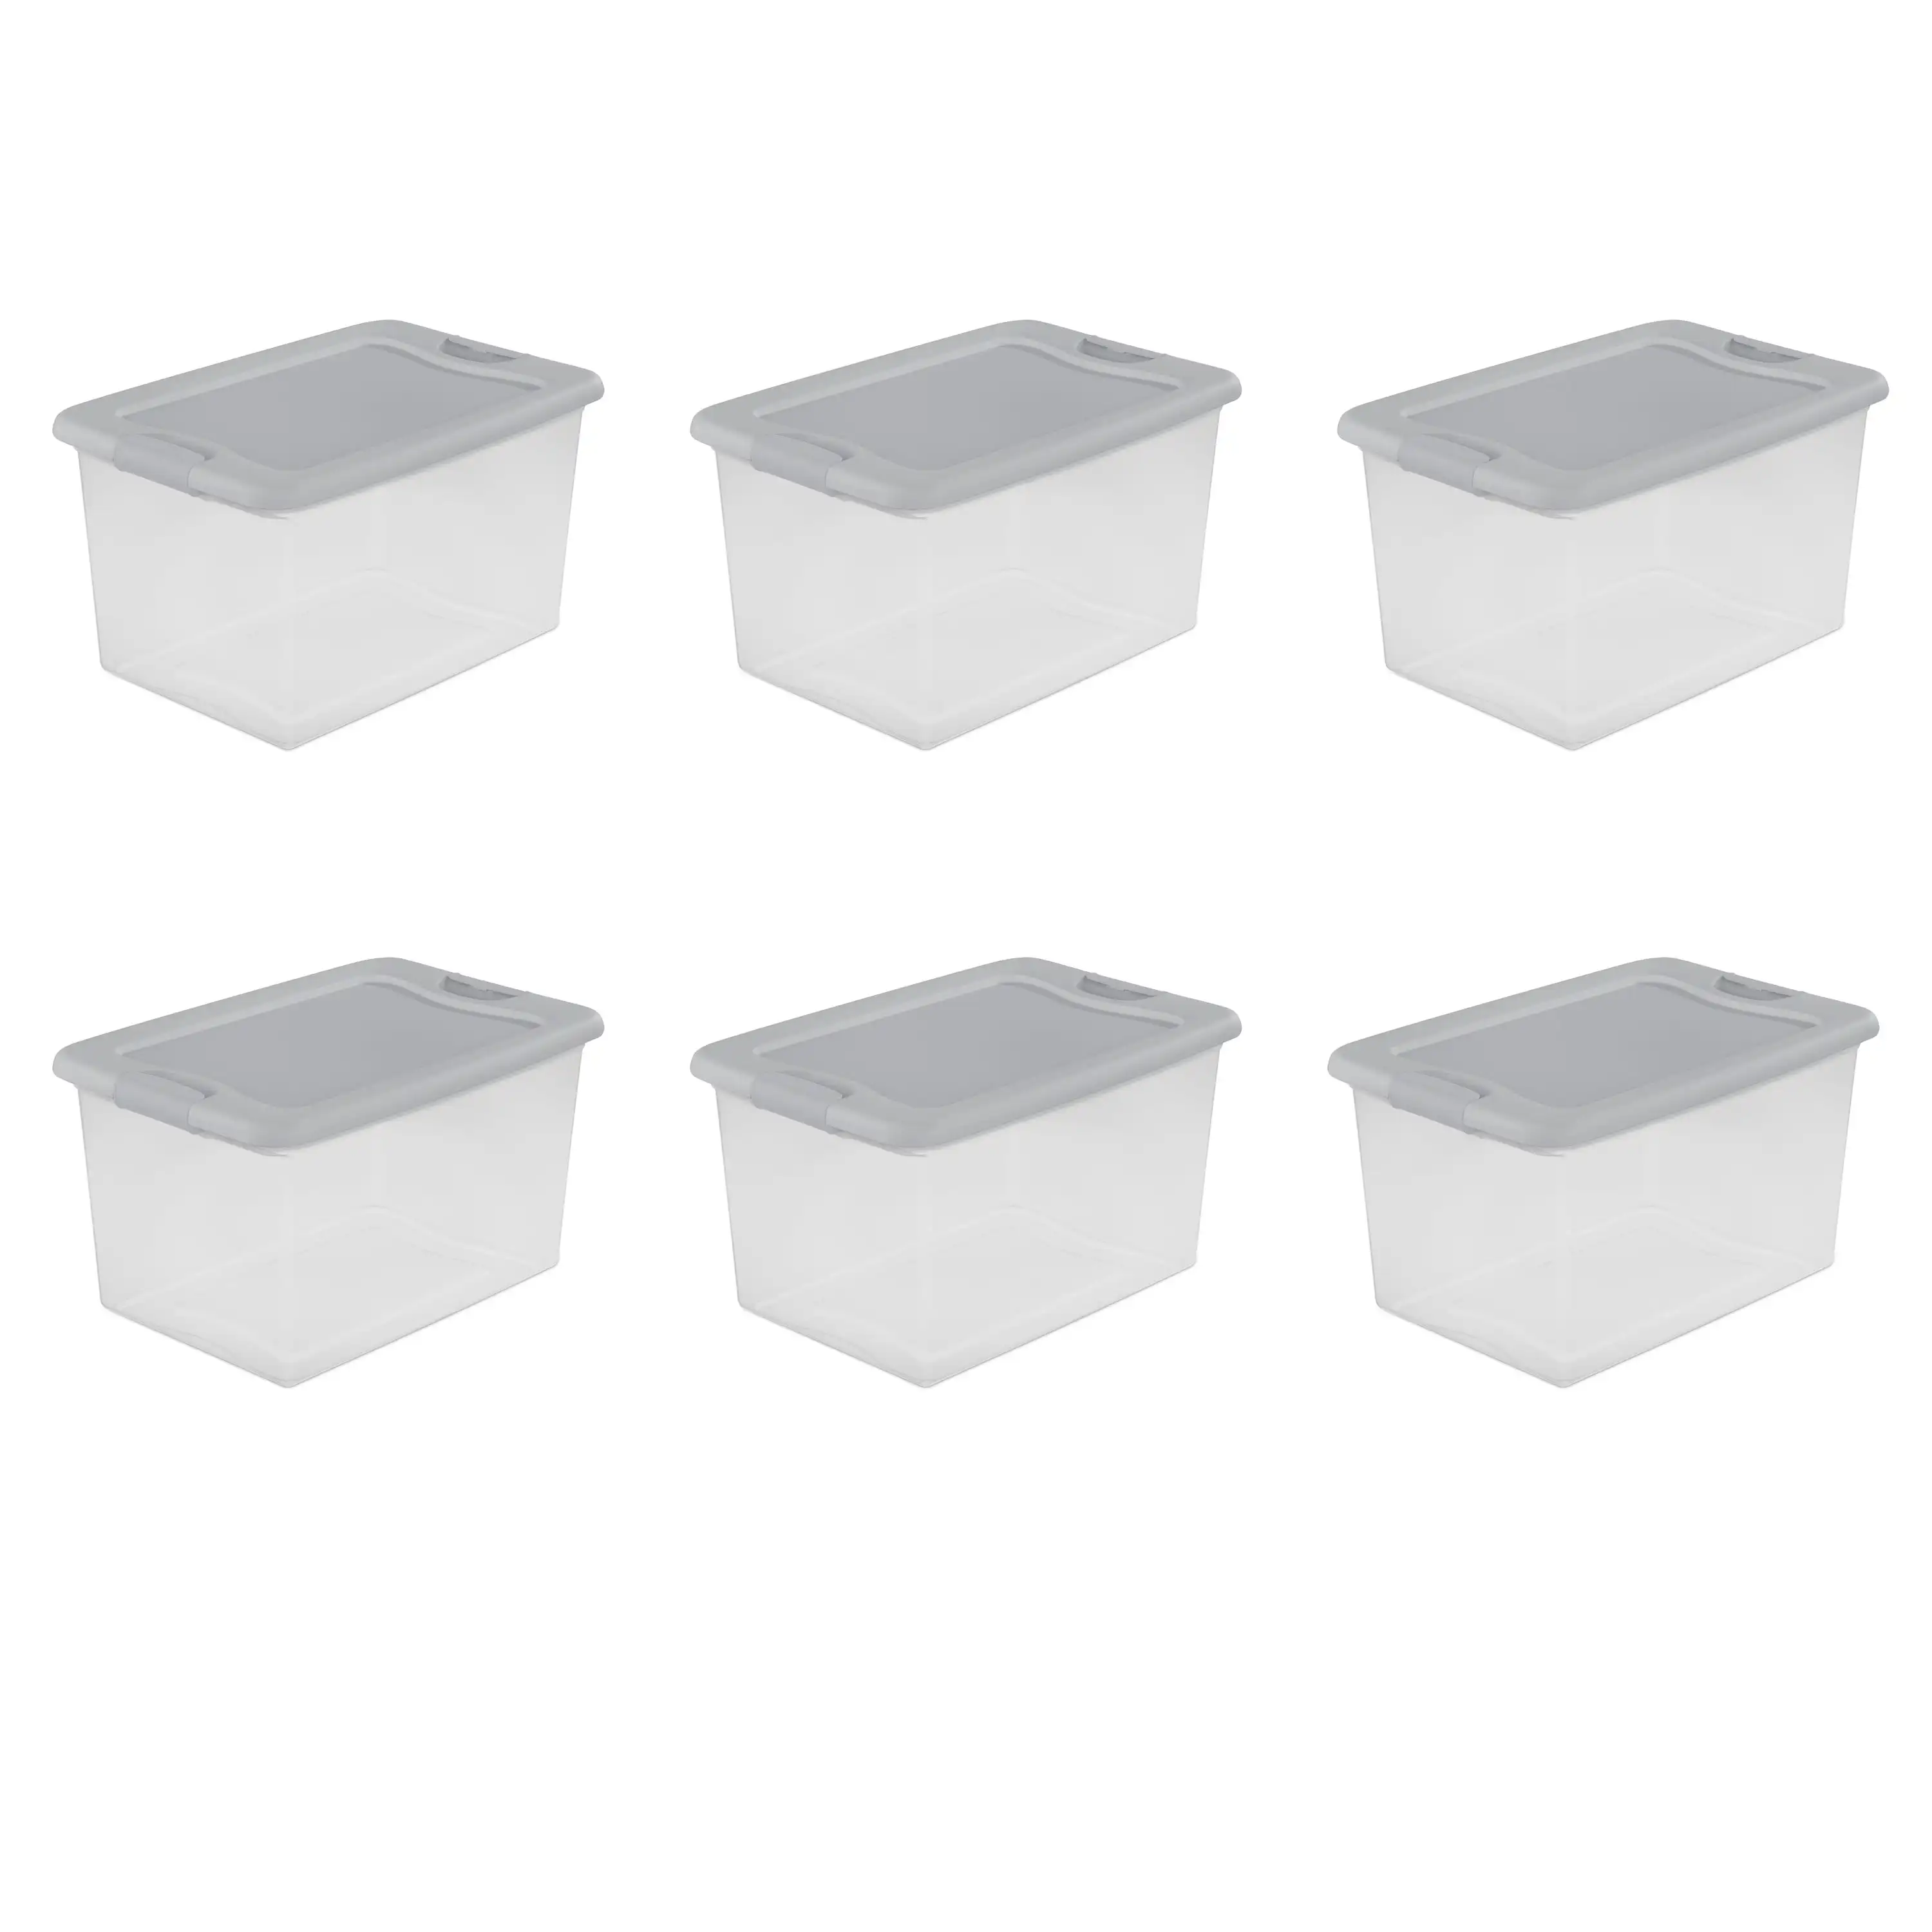 https://ae01.alicdn.com/kf/Sbb58287e2db344589bcfa0c8e4404191q/Sterilite-64-Qt-Latching-Box-White-Set-of-6-storage-storage-containers-storage-box.jpg